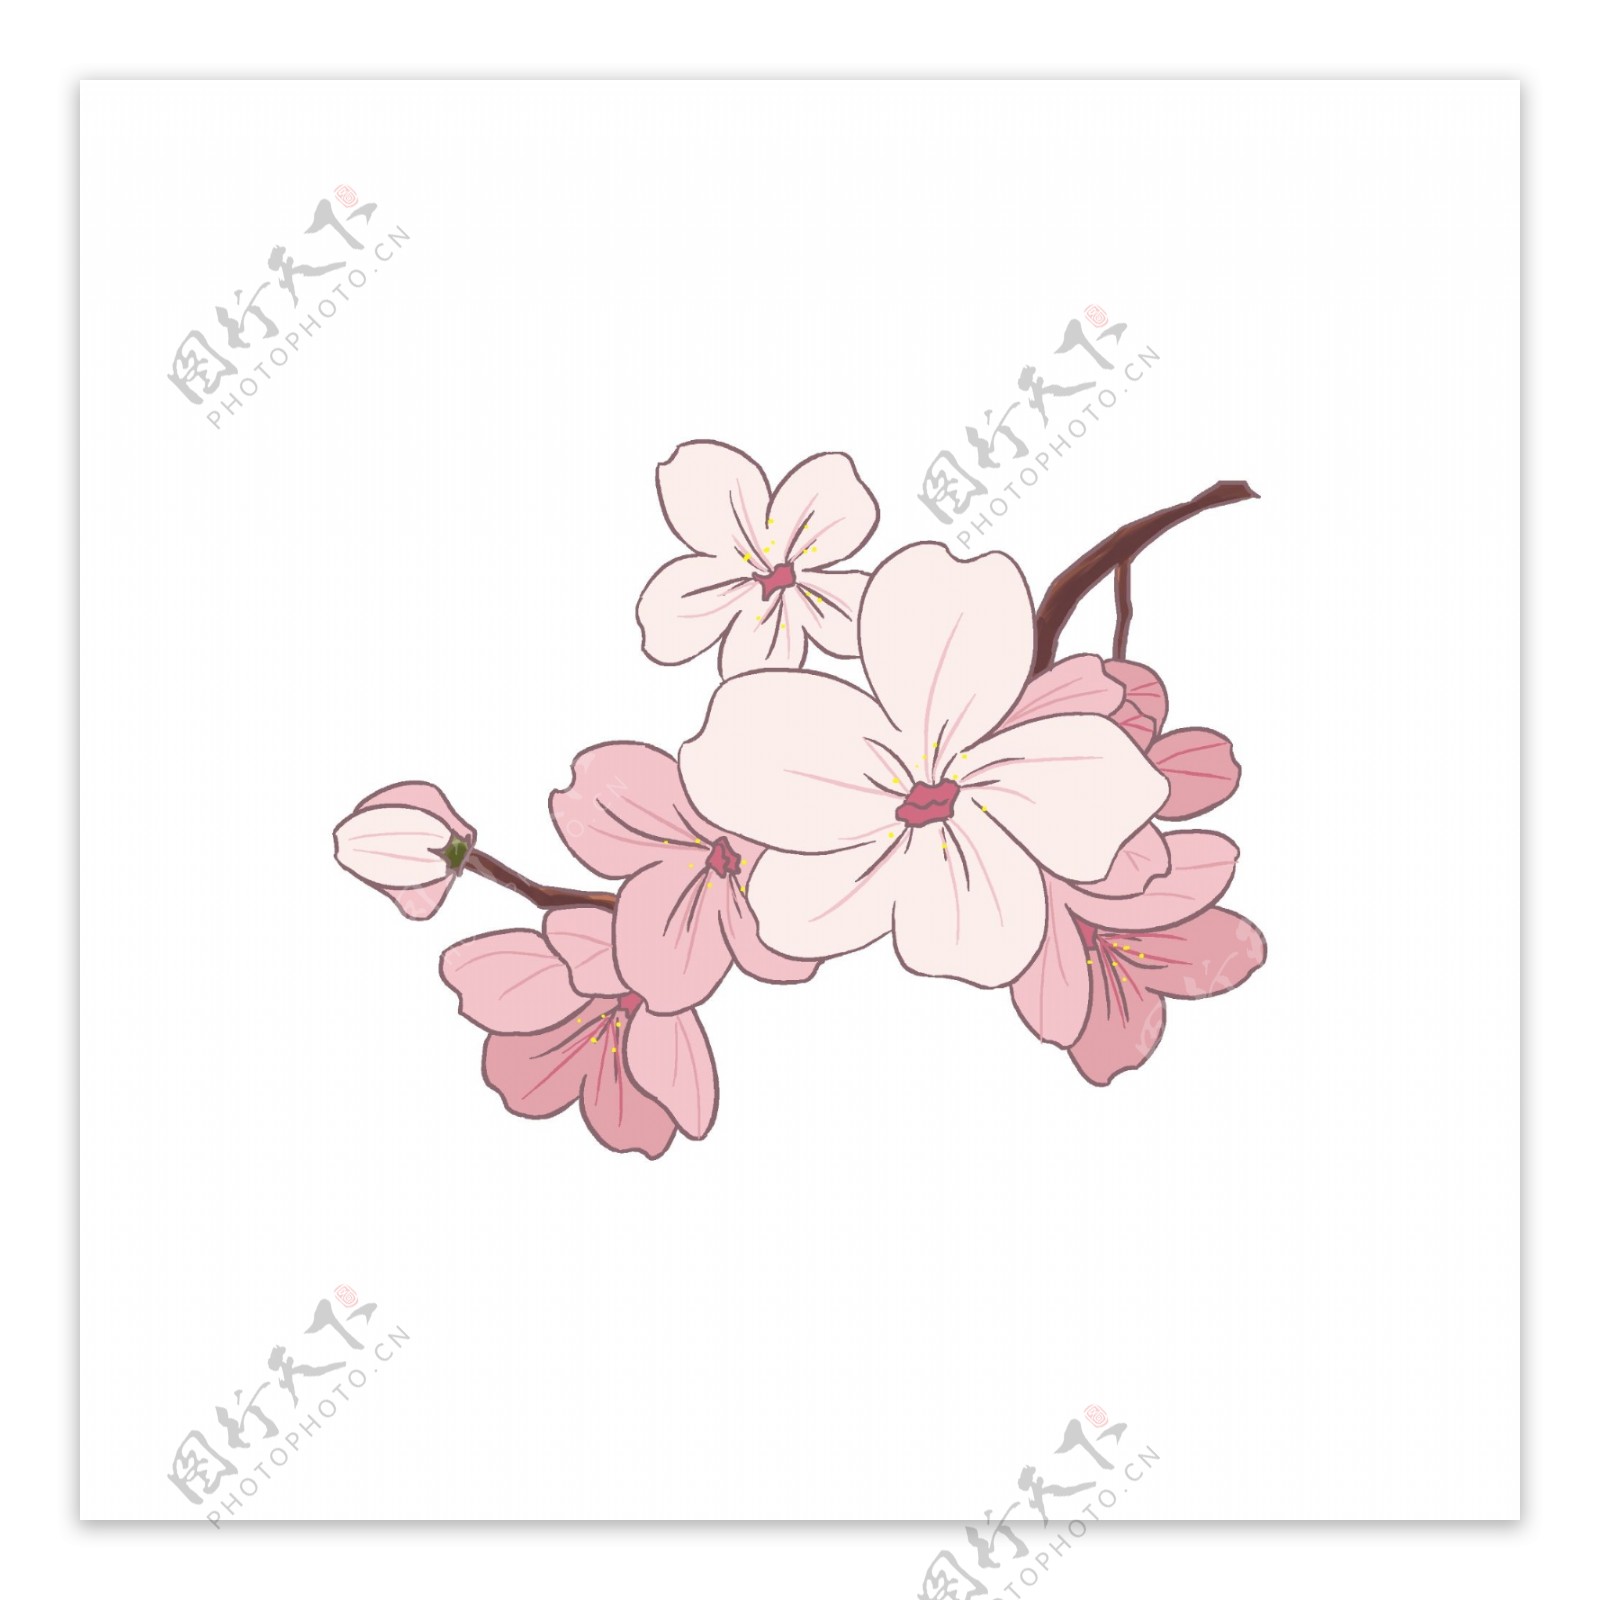 粉白色的春天樱花插画